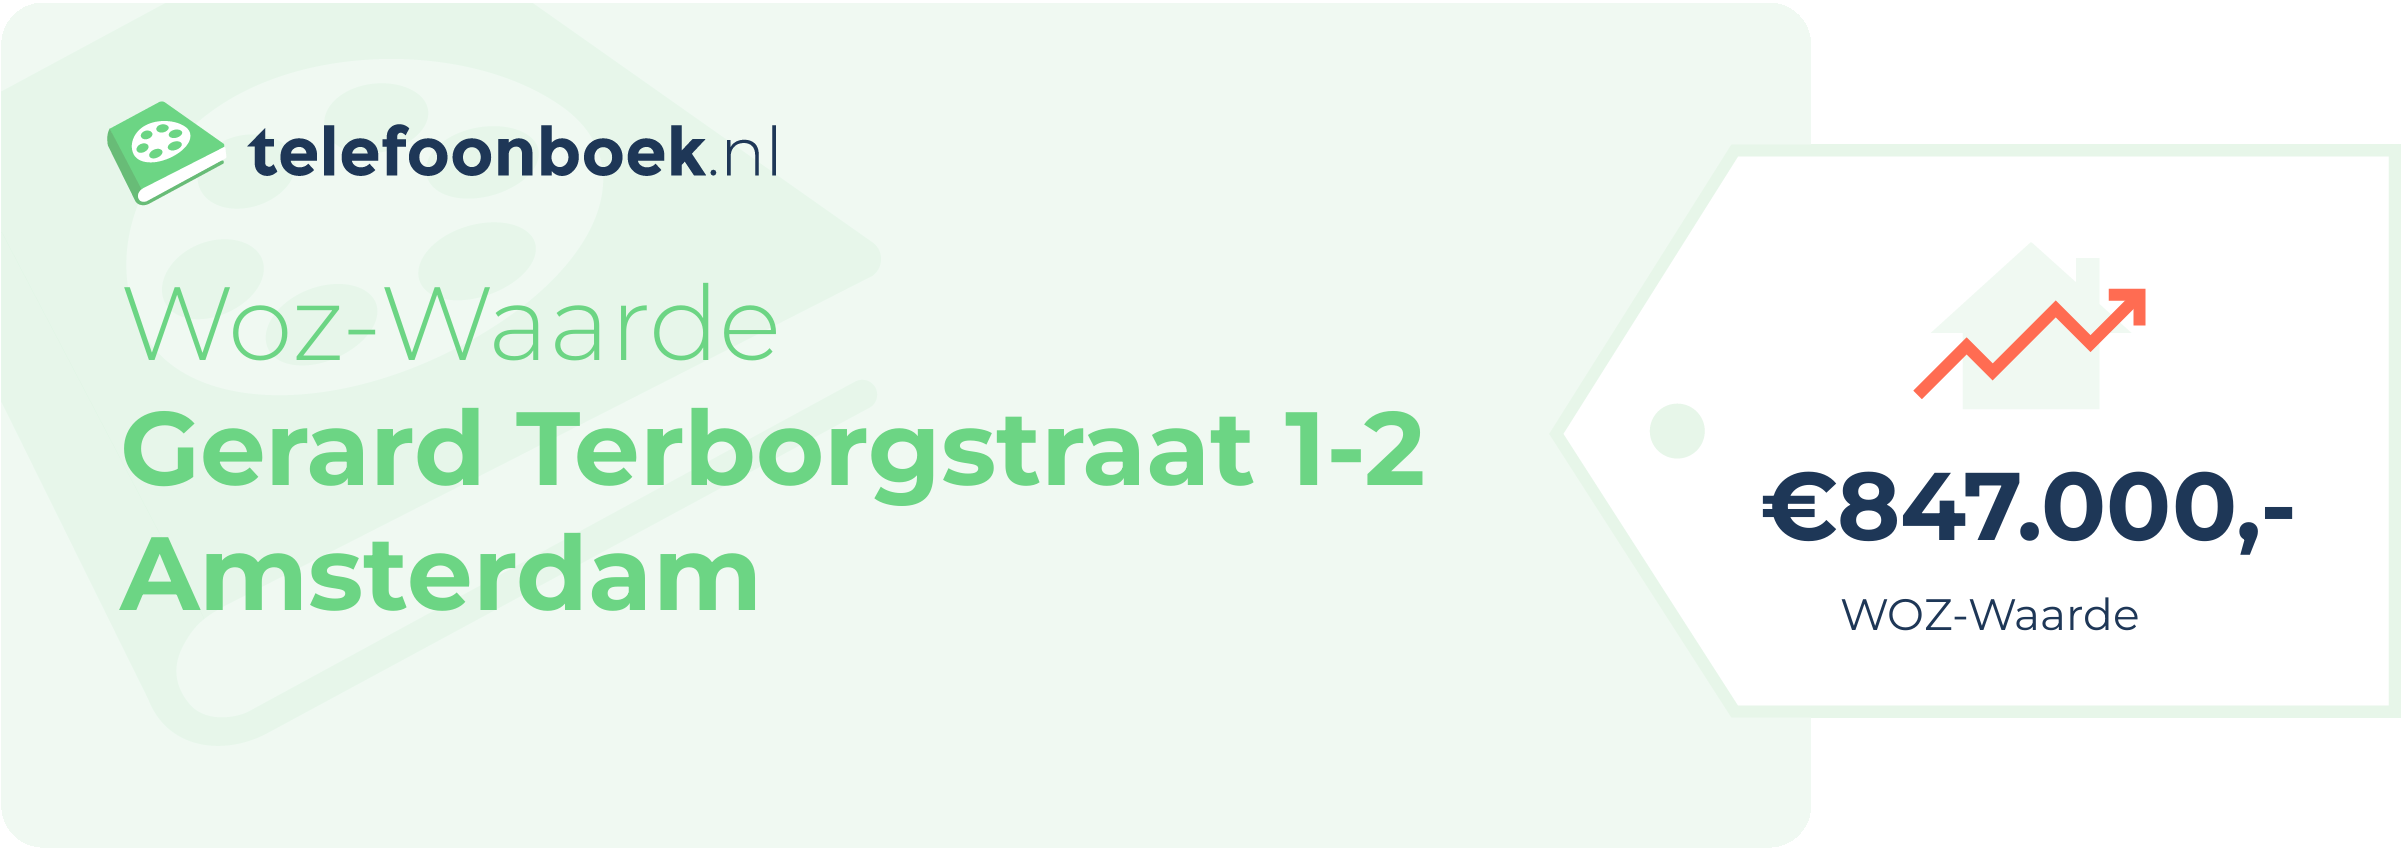 WOZ-waarde Gerard Terborgstraat 1-2 Amsterdam